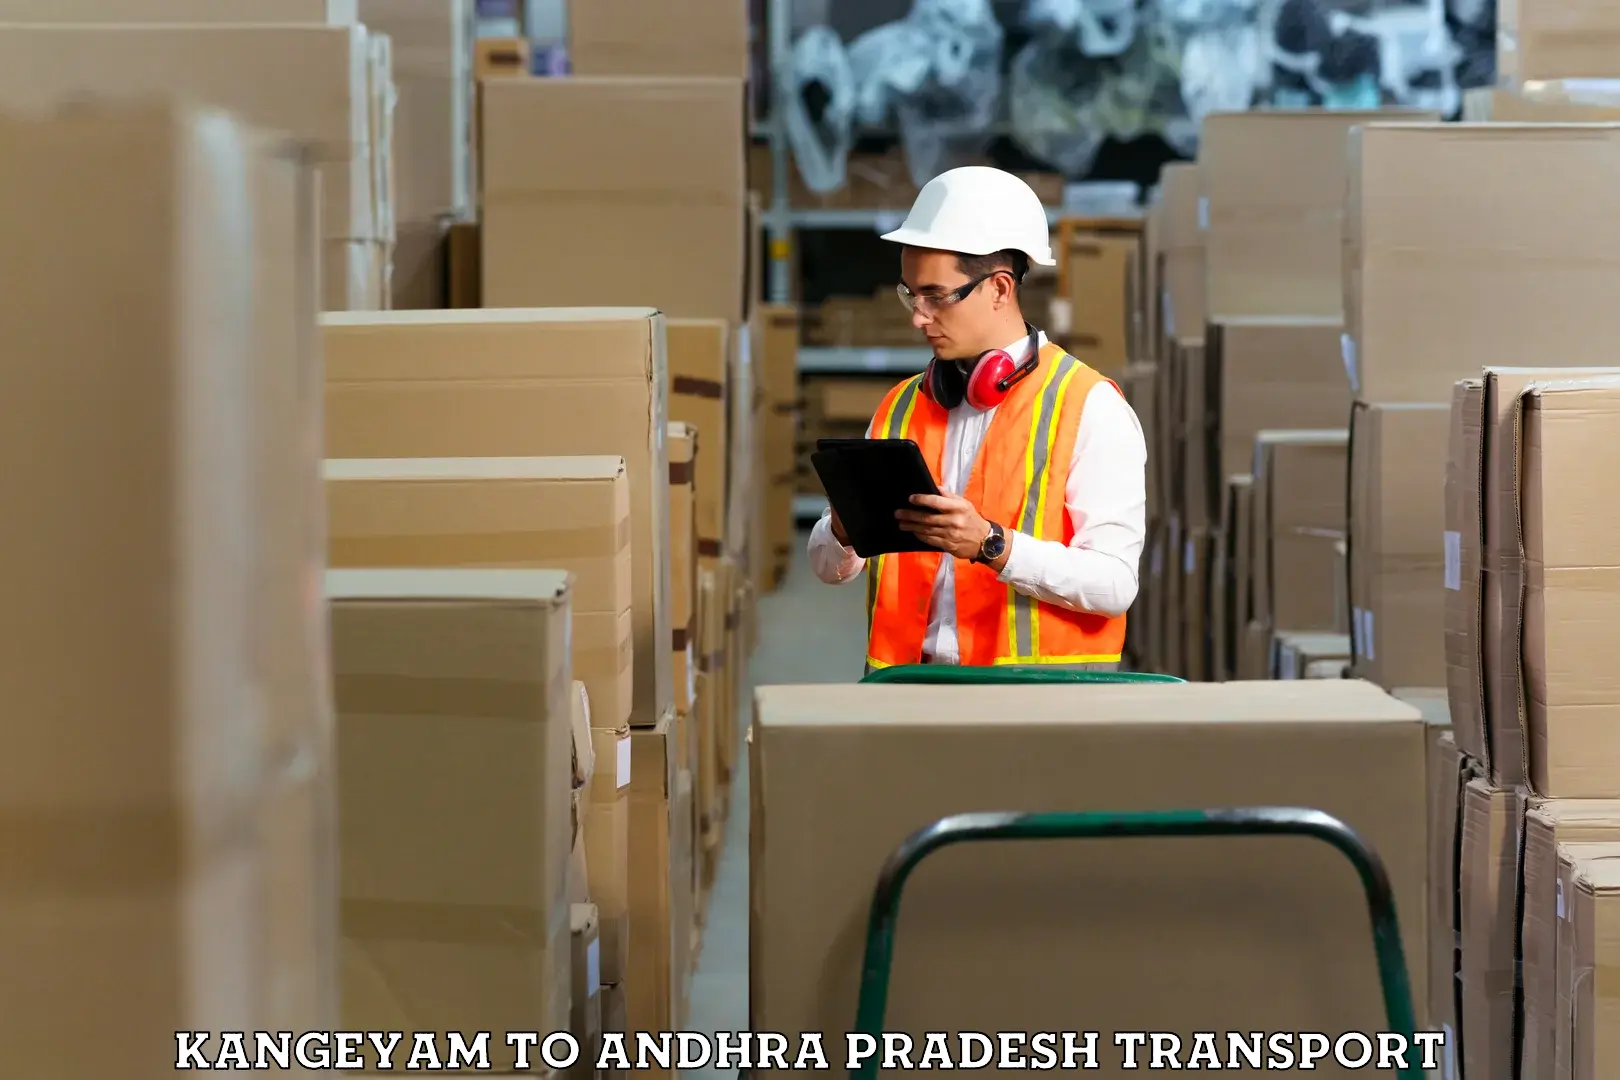 Furniture transport service Kangeyam to IIT Tirupati